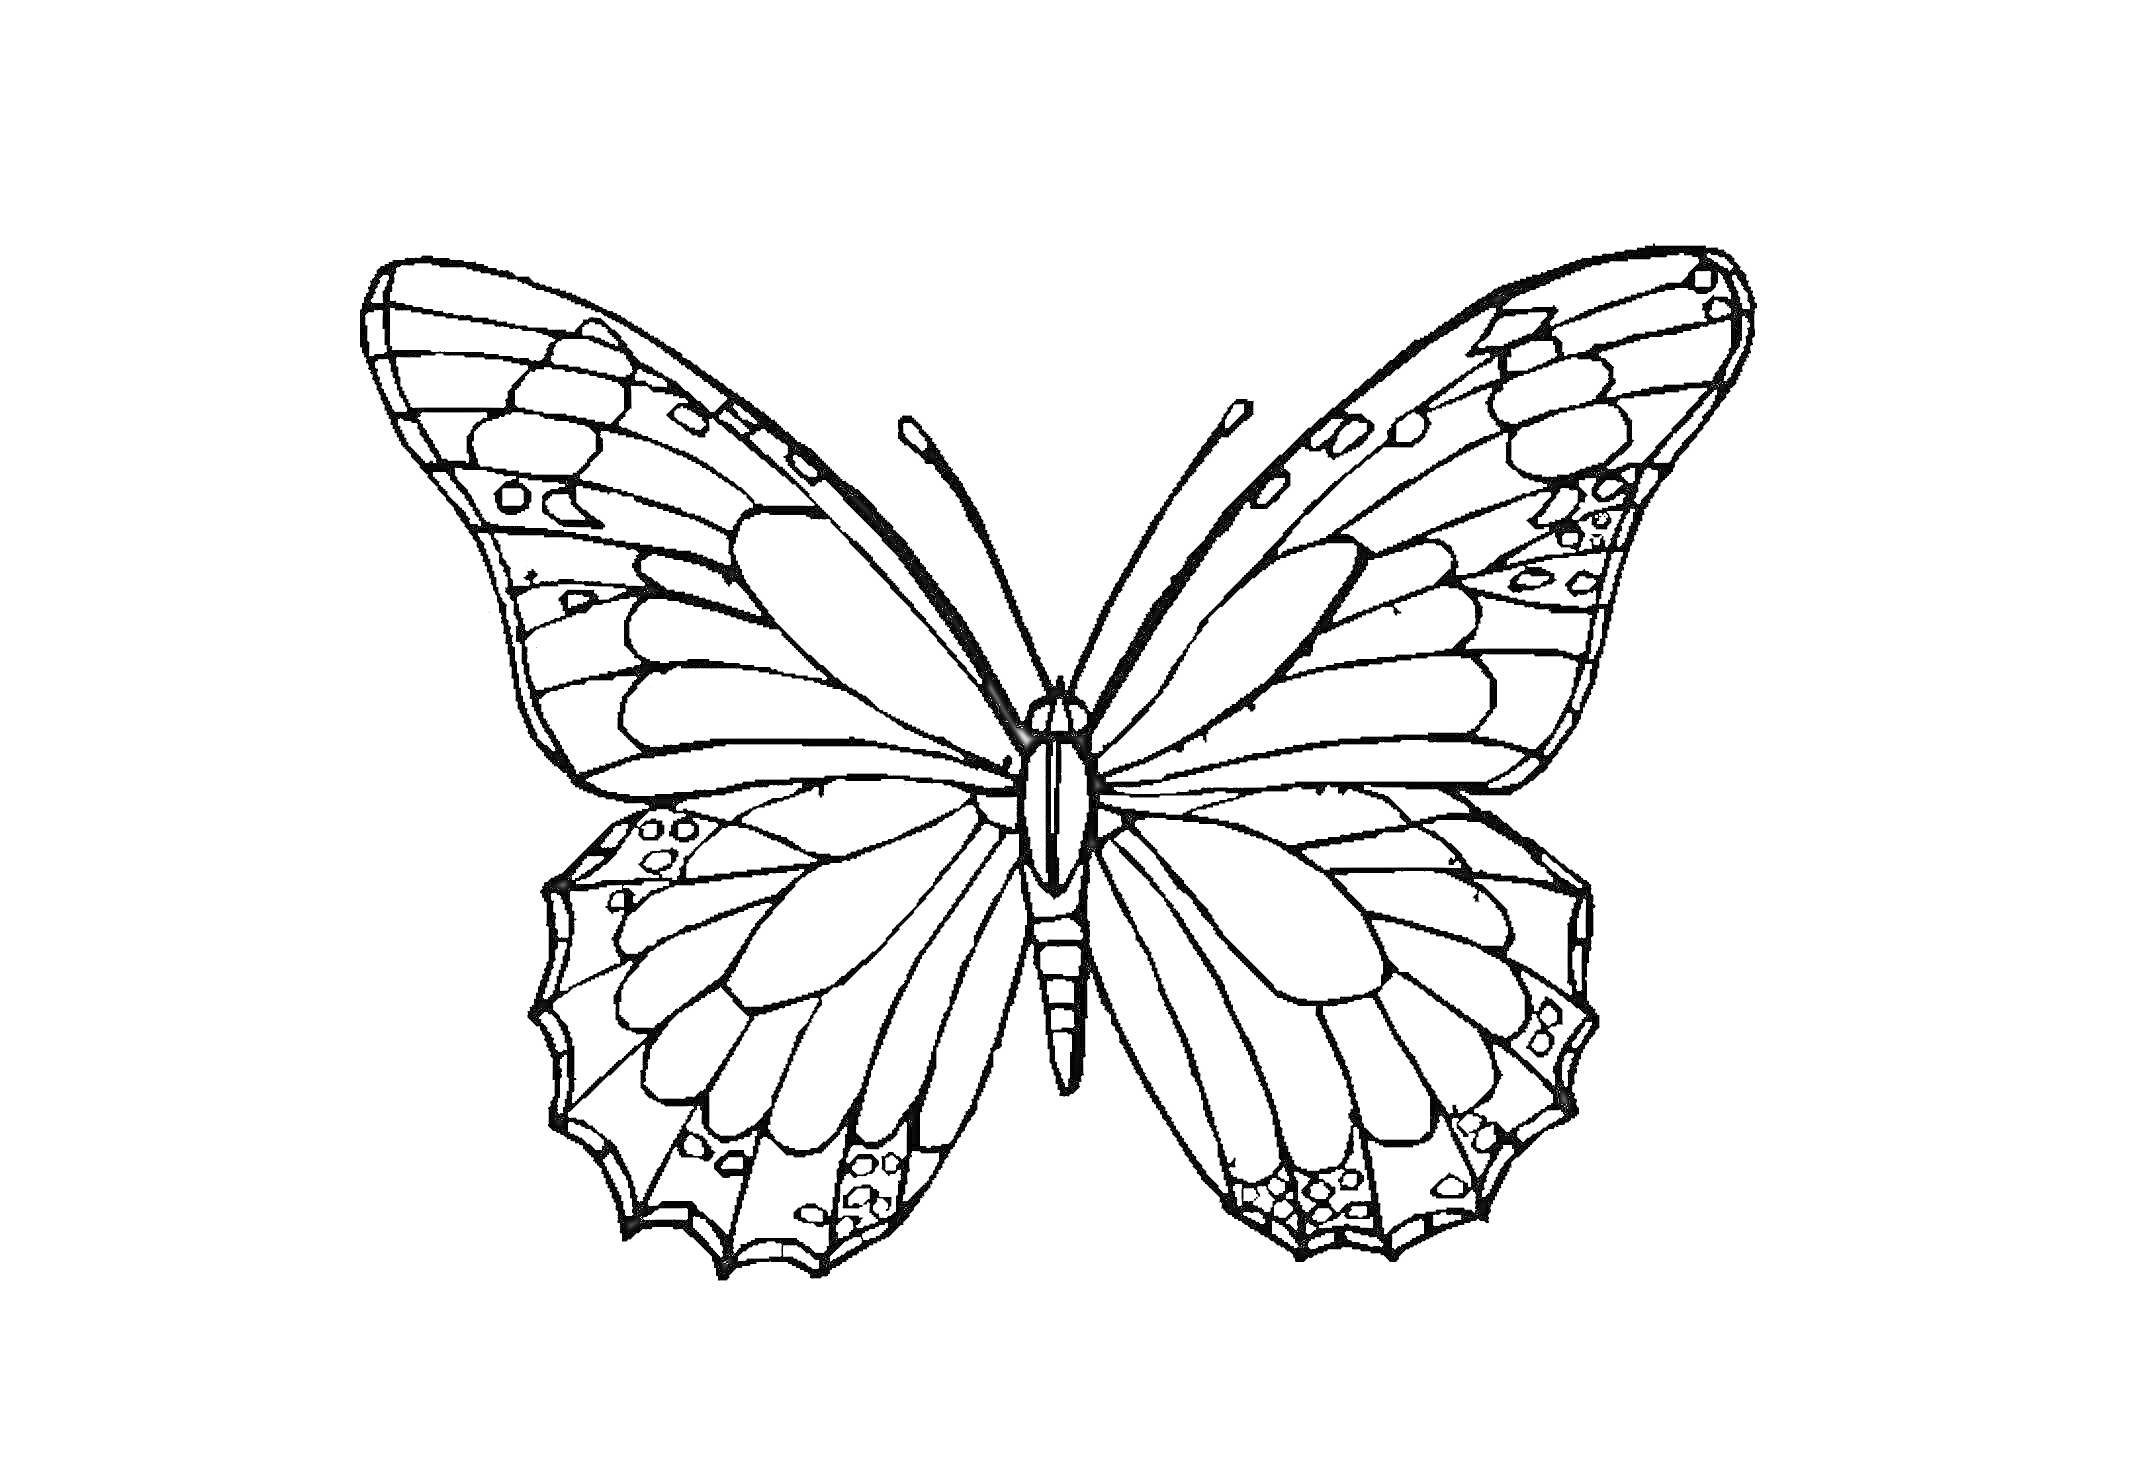 Раскраска Черно-белая раскраска бабочки с развернутыми крыльями